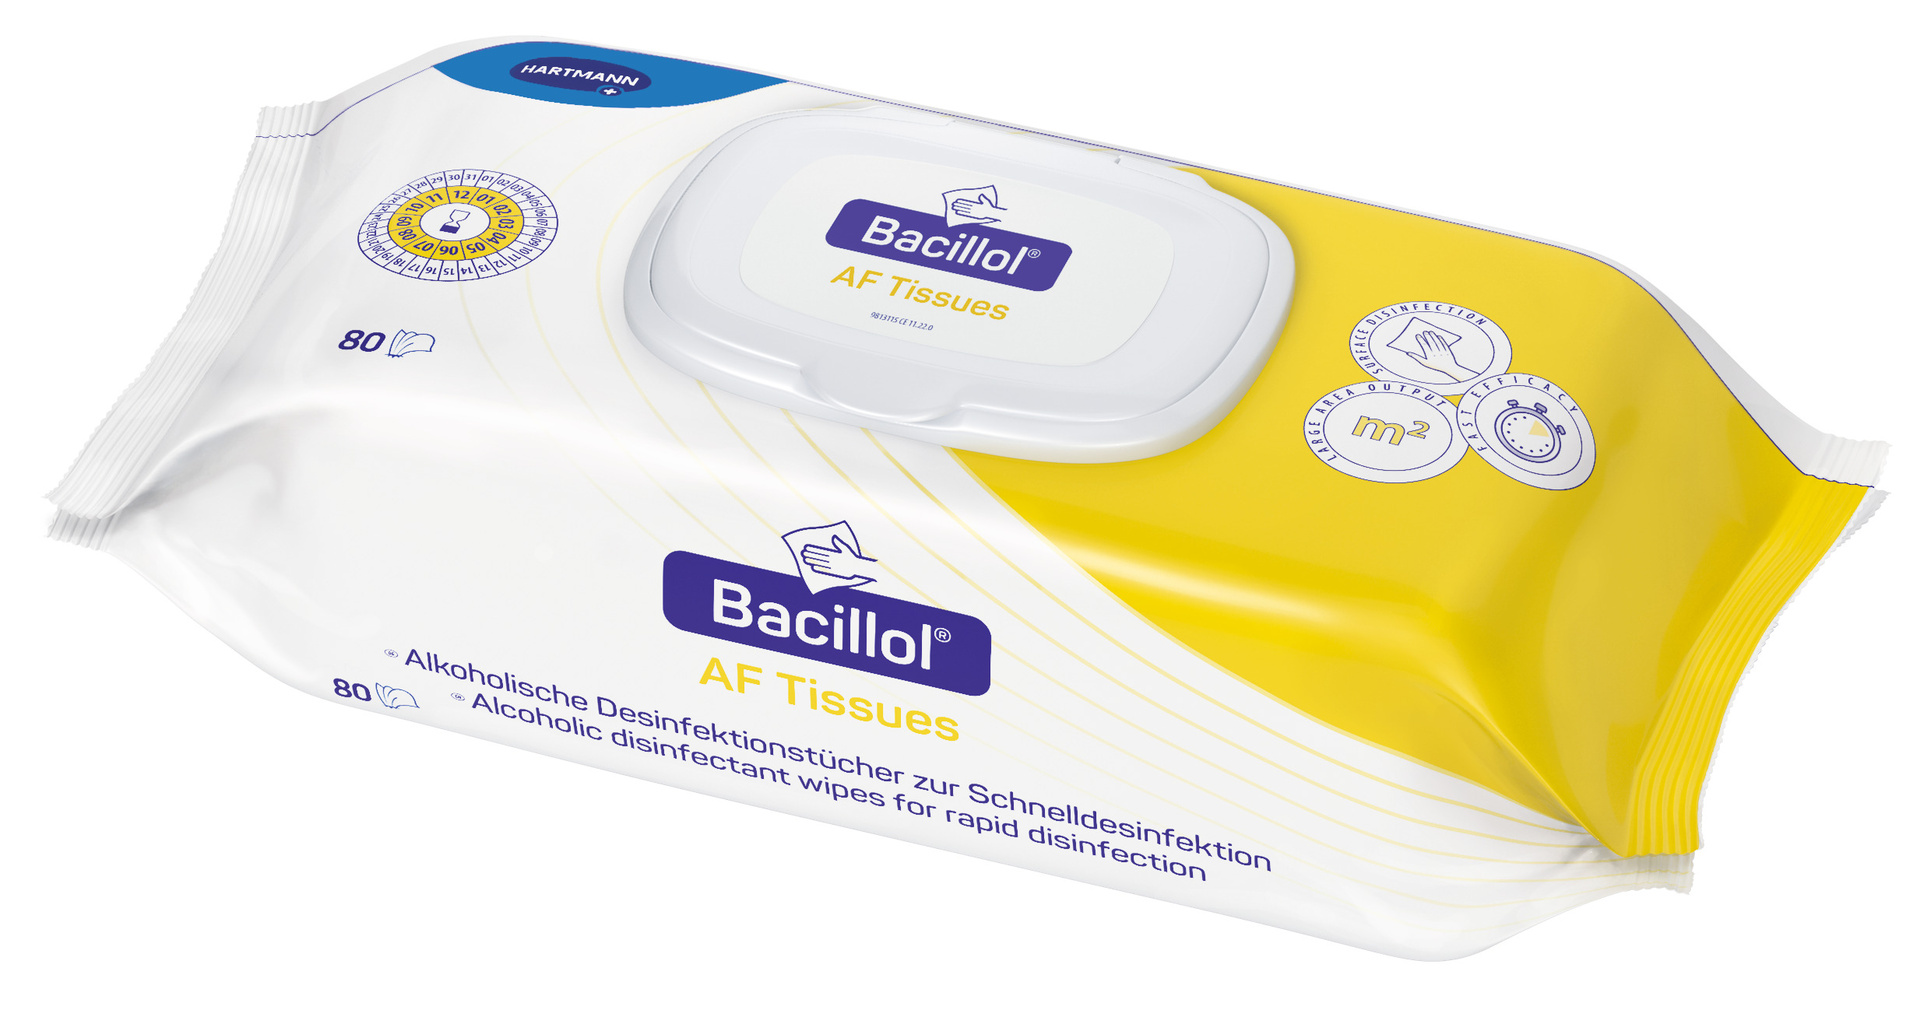 Bacillol AF Tissues Schnell-Desinfektionstücher, Flowpack, 80 Stck.